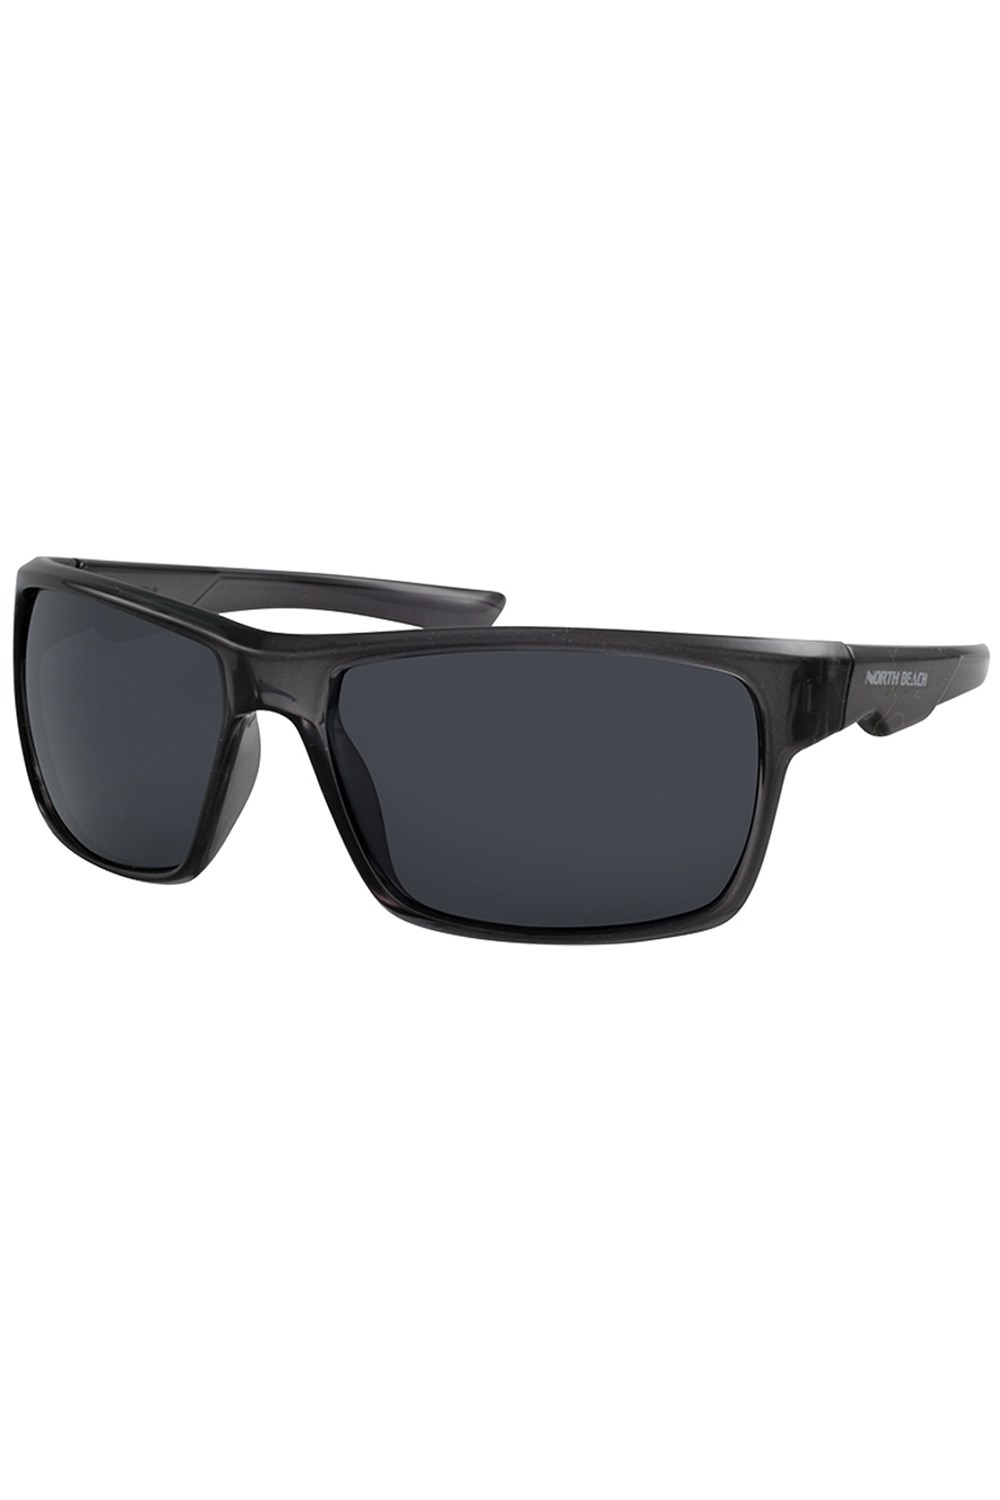 Pearleye Unisex Polarized Sunglasses -